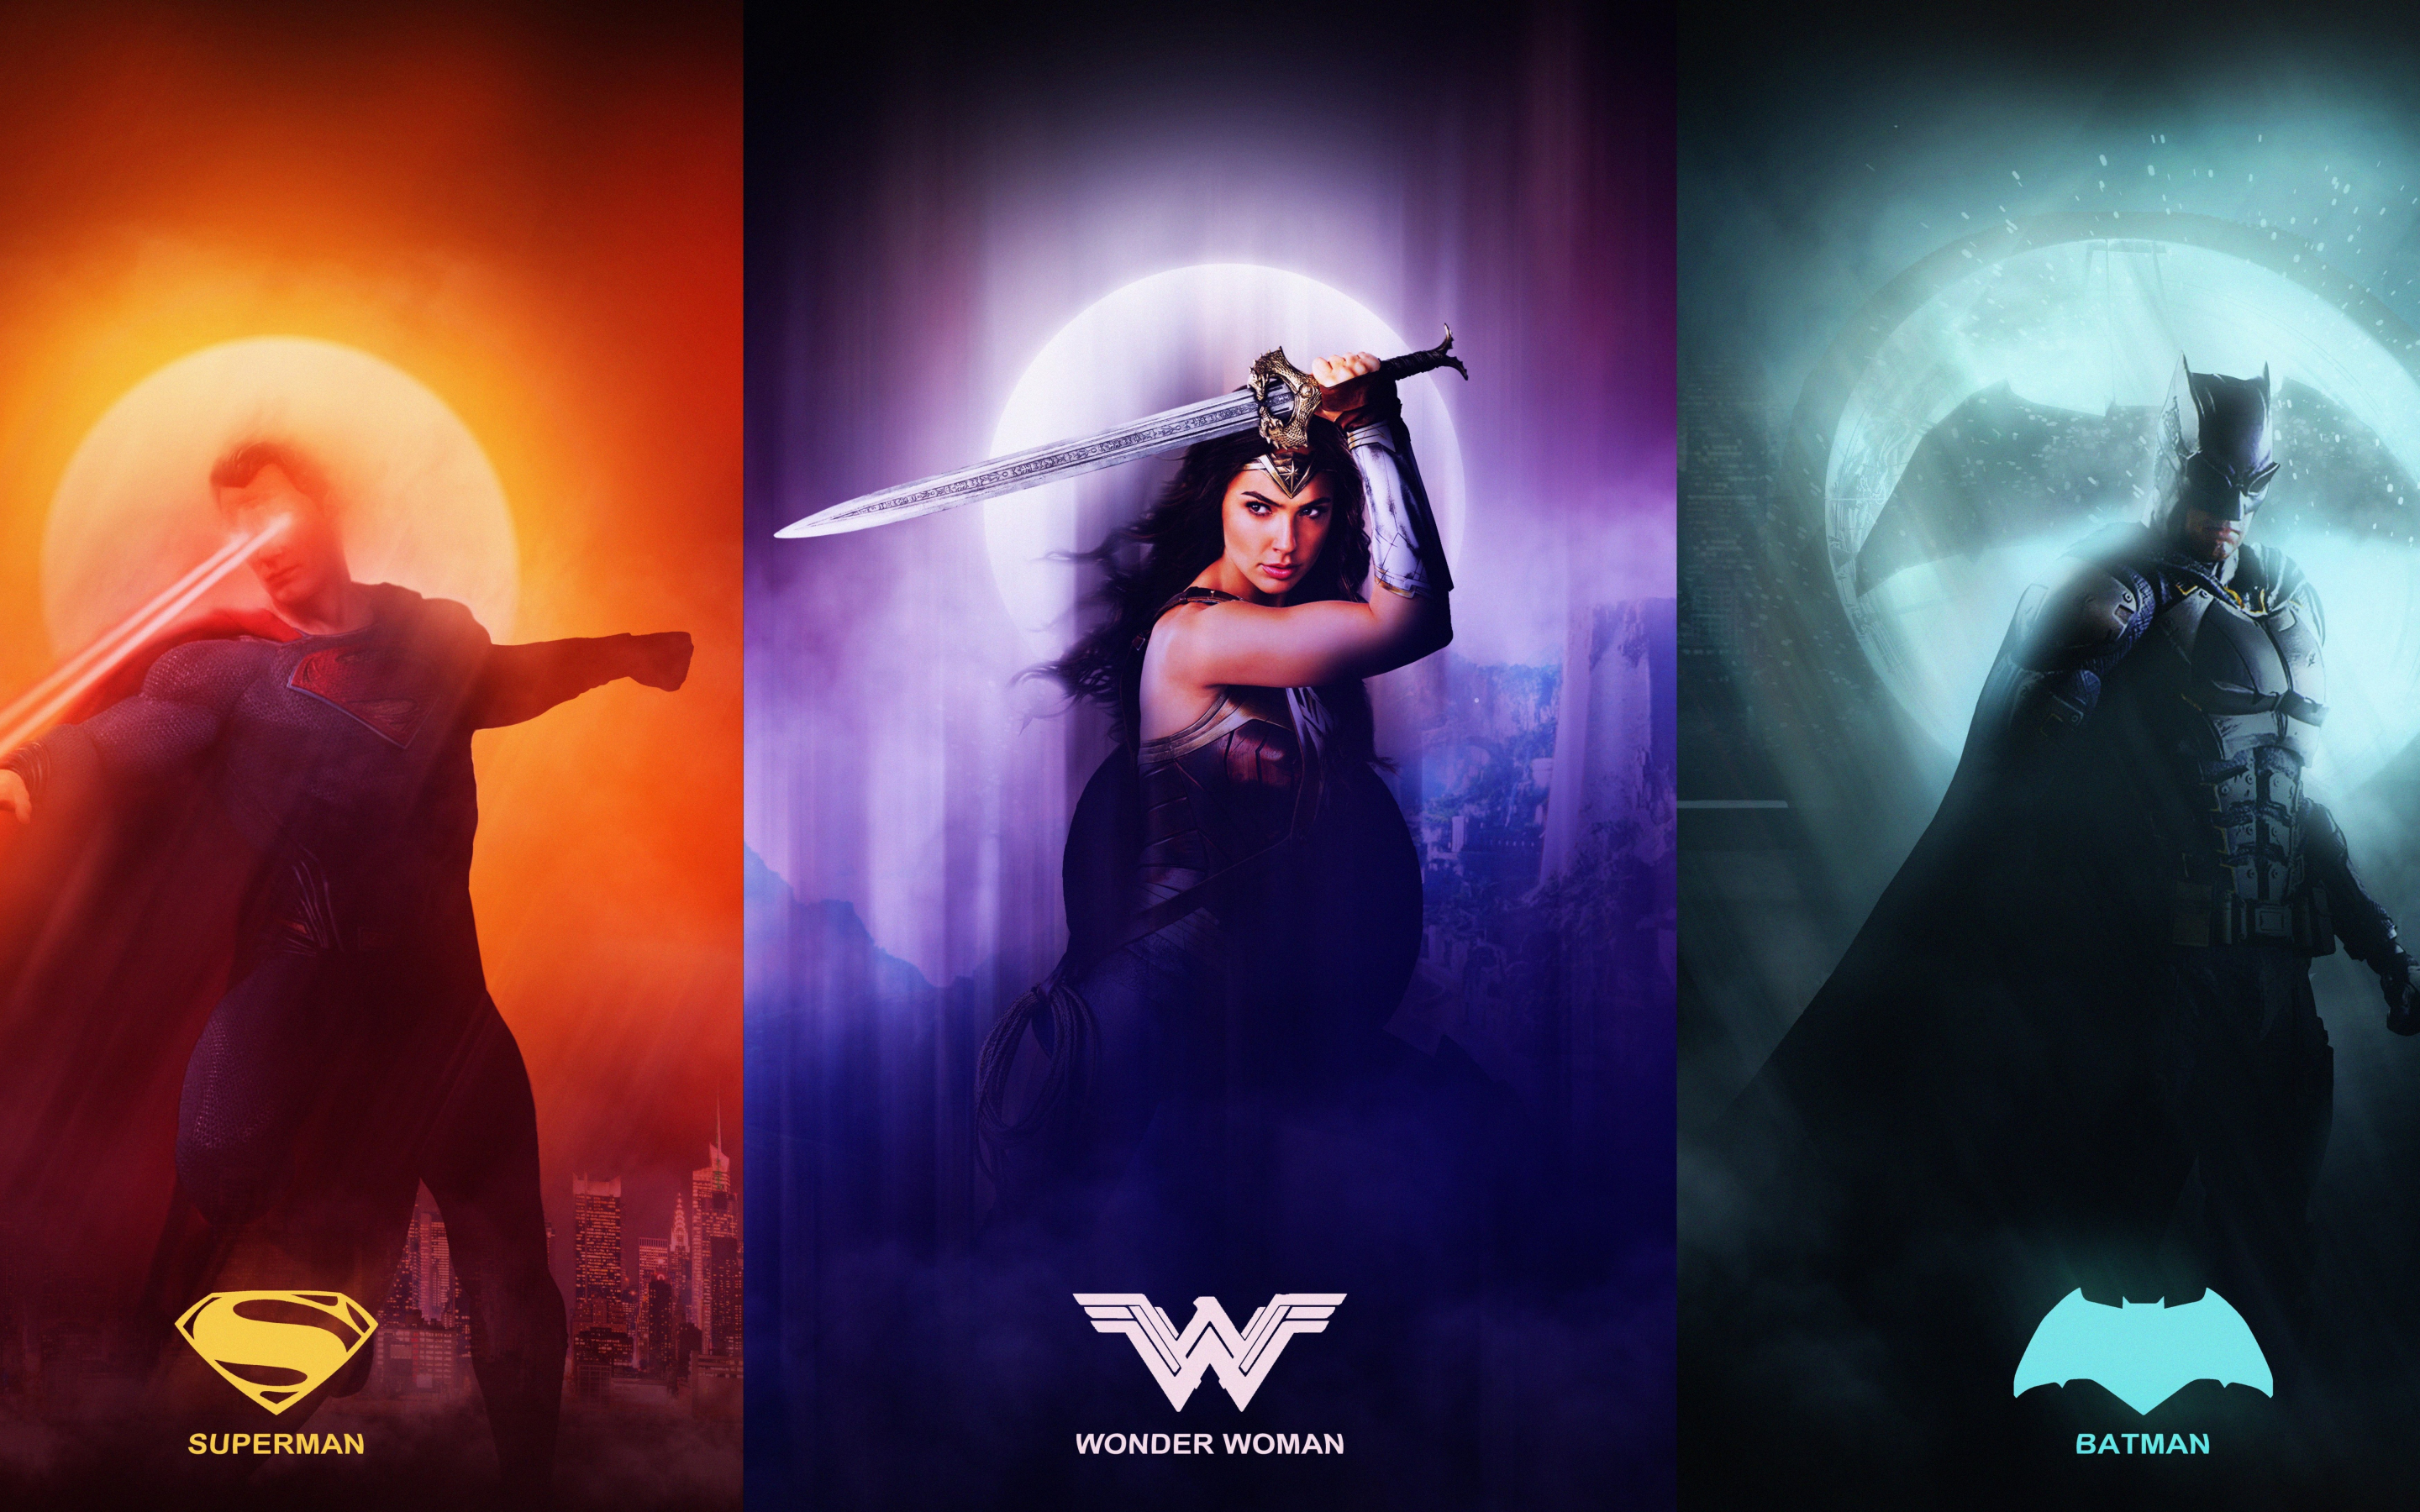 Justice league, superman, wonder woman, batman, collage, 2880x1800 wallpaper